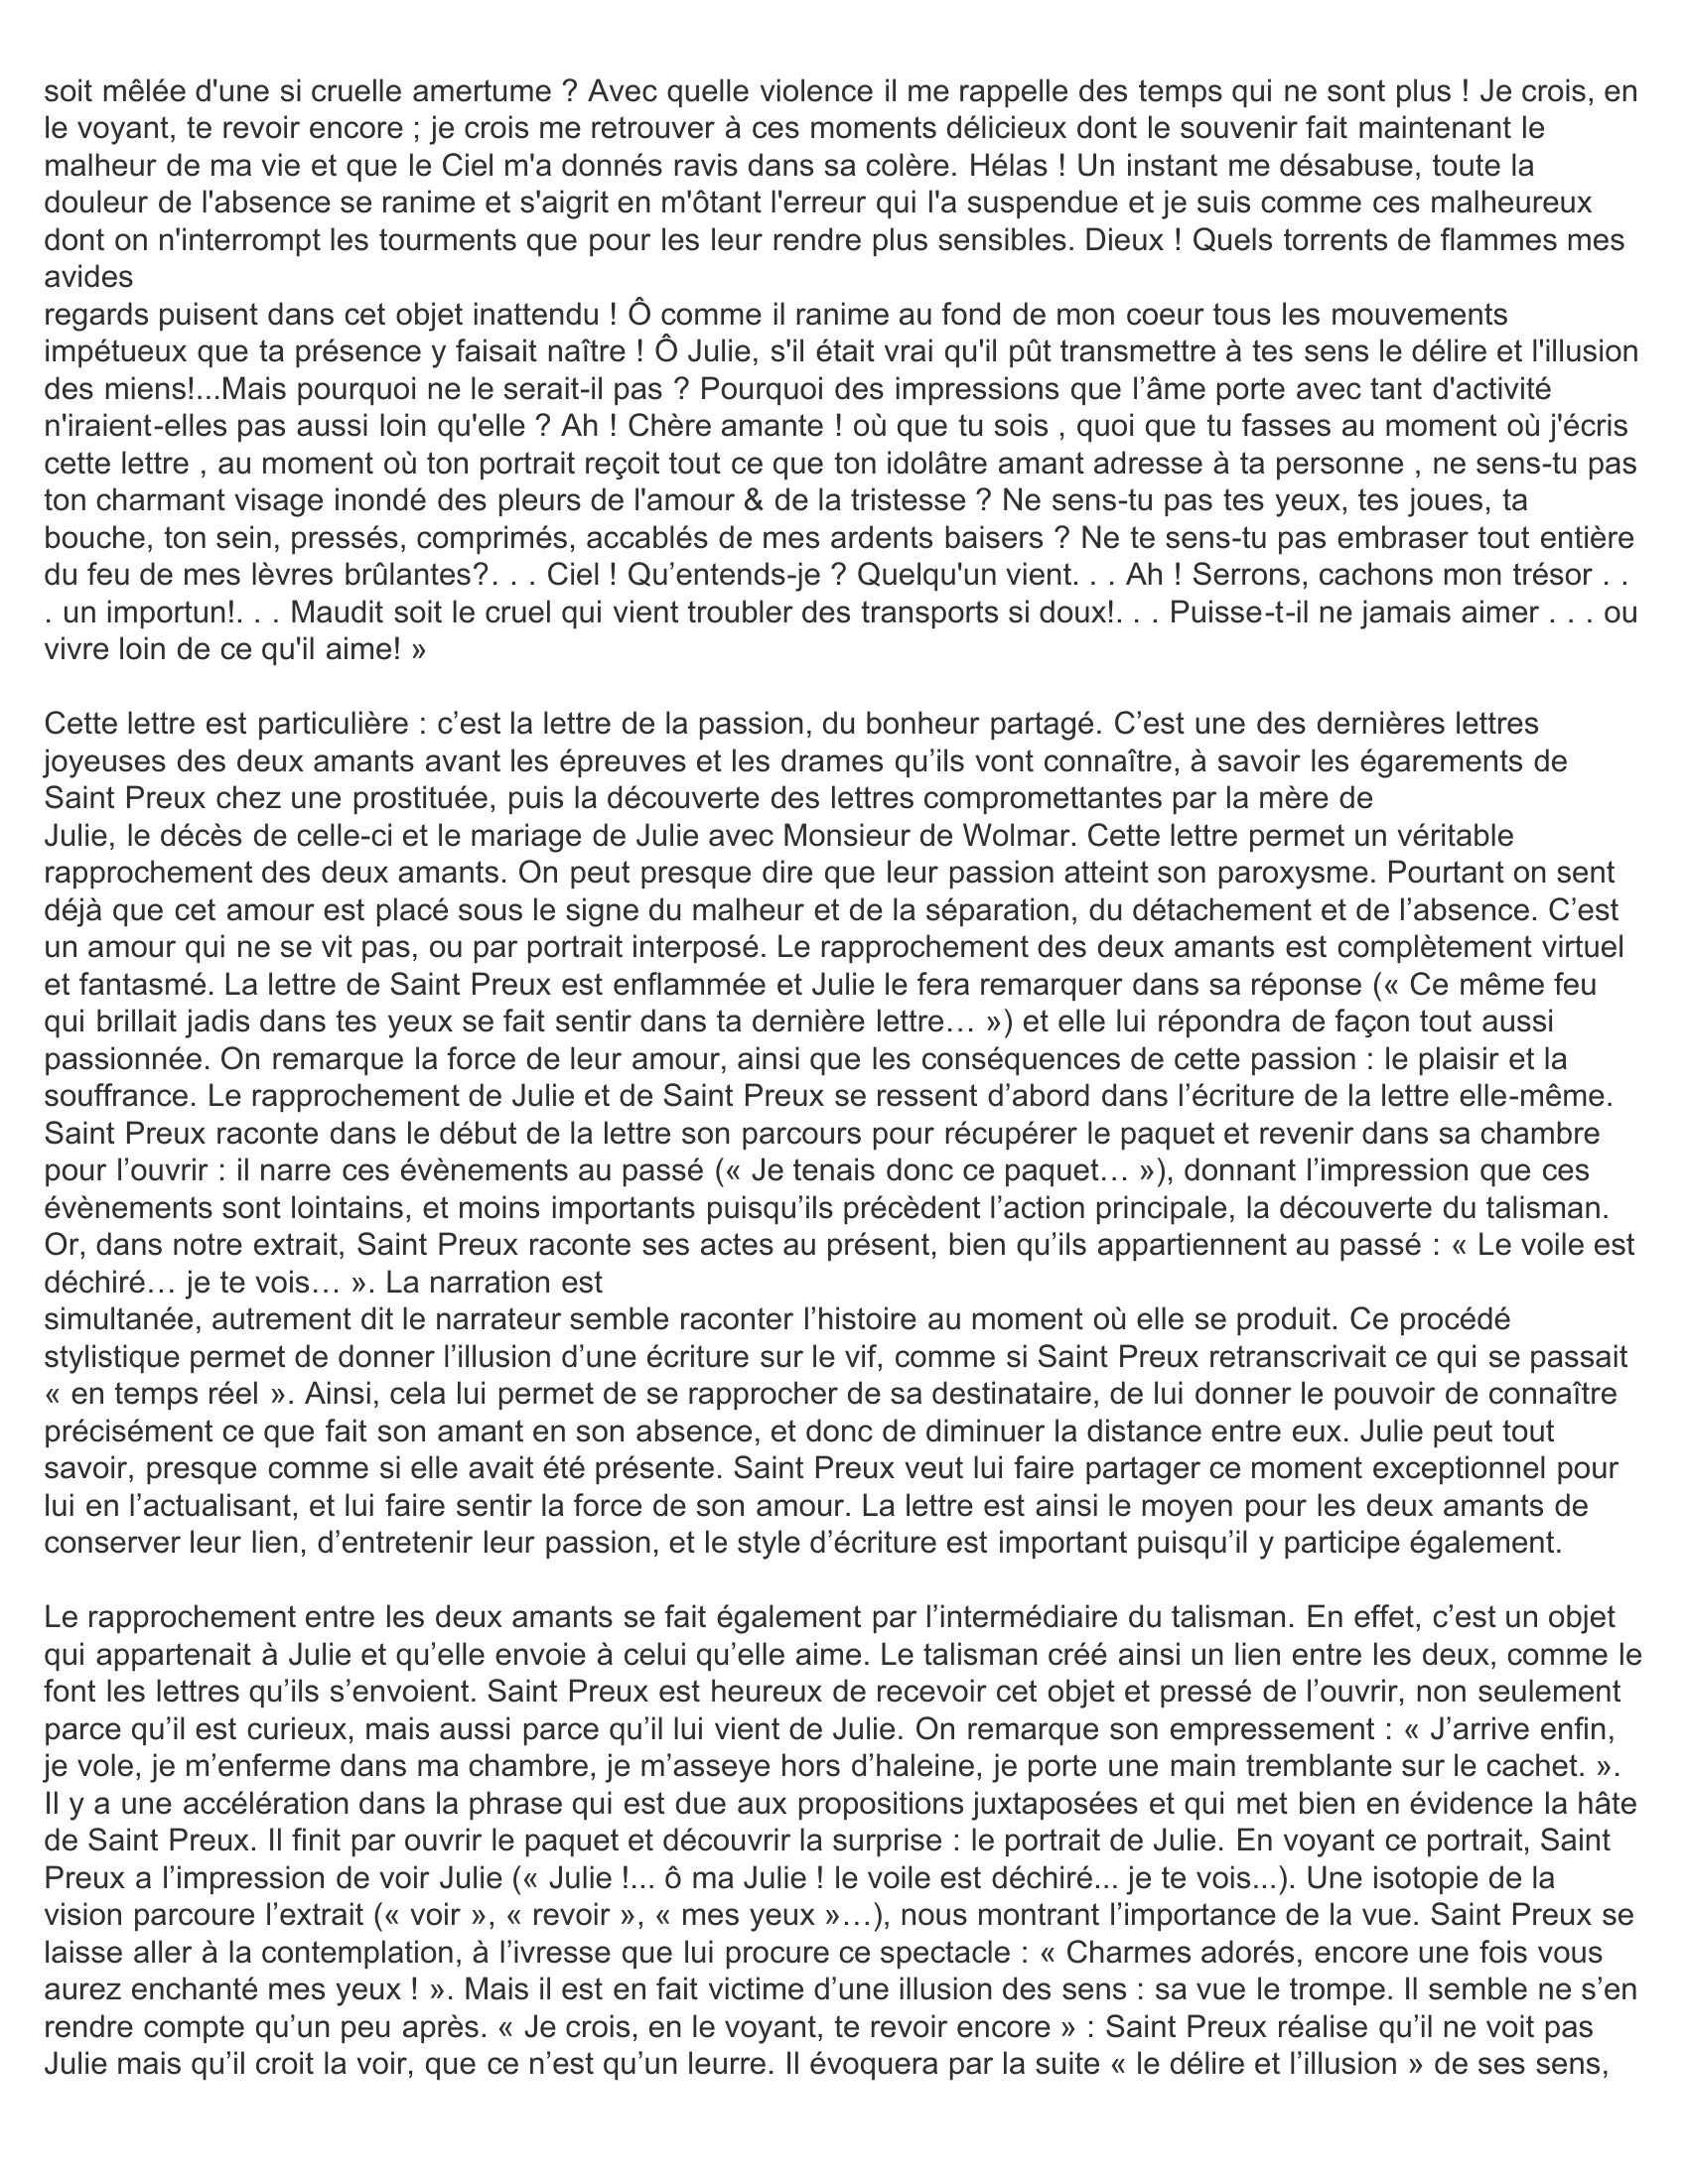 Prévisualisation du document "La Nouvelle Héloïse" de Rousseau, lettre XXII, tome 2 EXPLICATION DE TEXTE